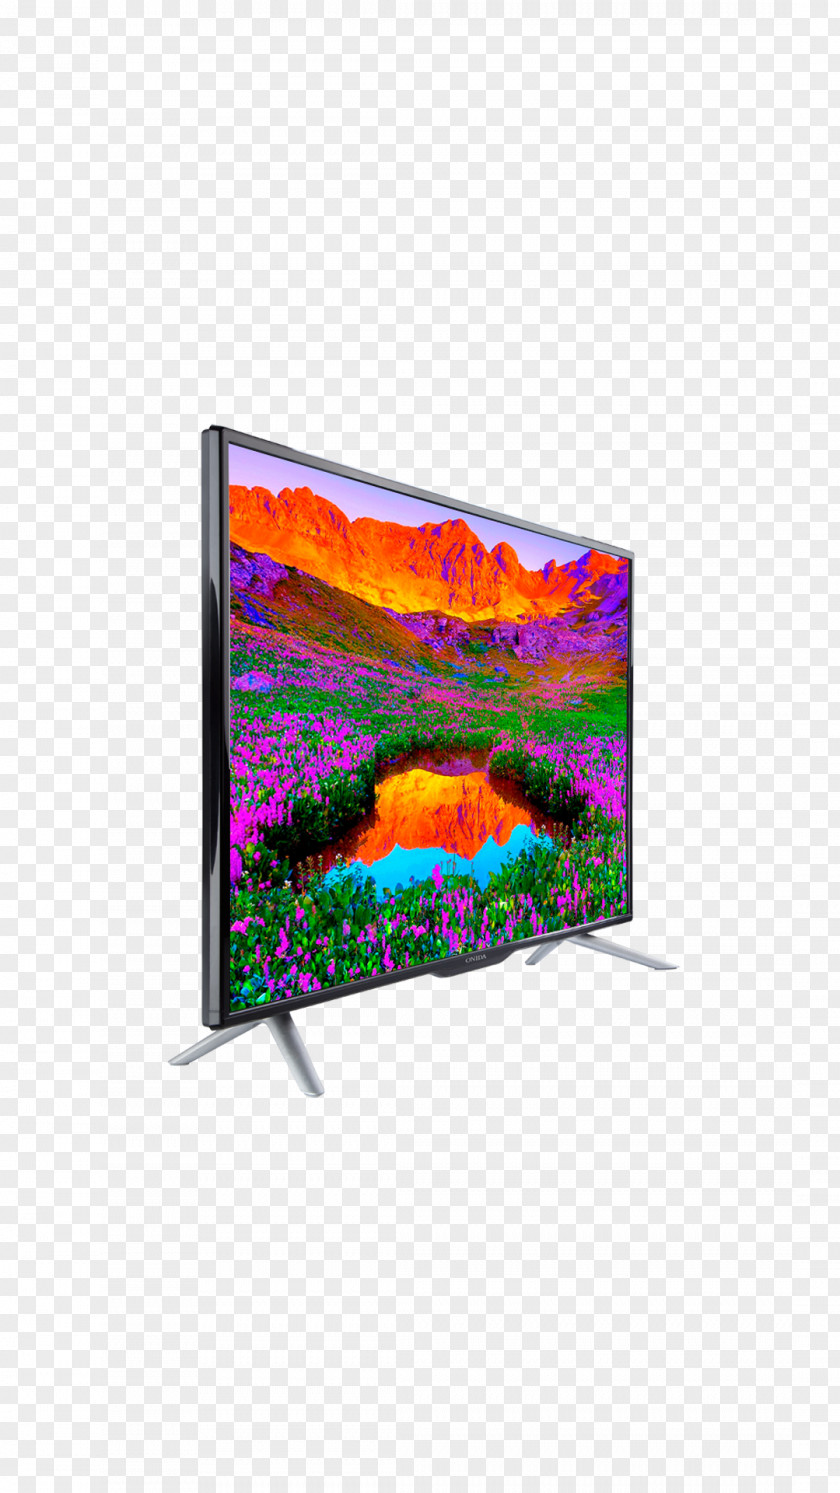 Led Tv Television Set LED-backlit LCD Flat Panel Display Backlight PNG